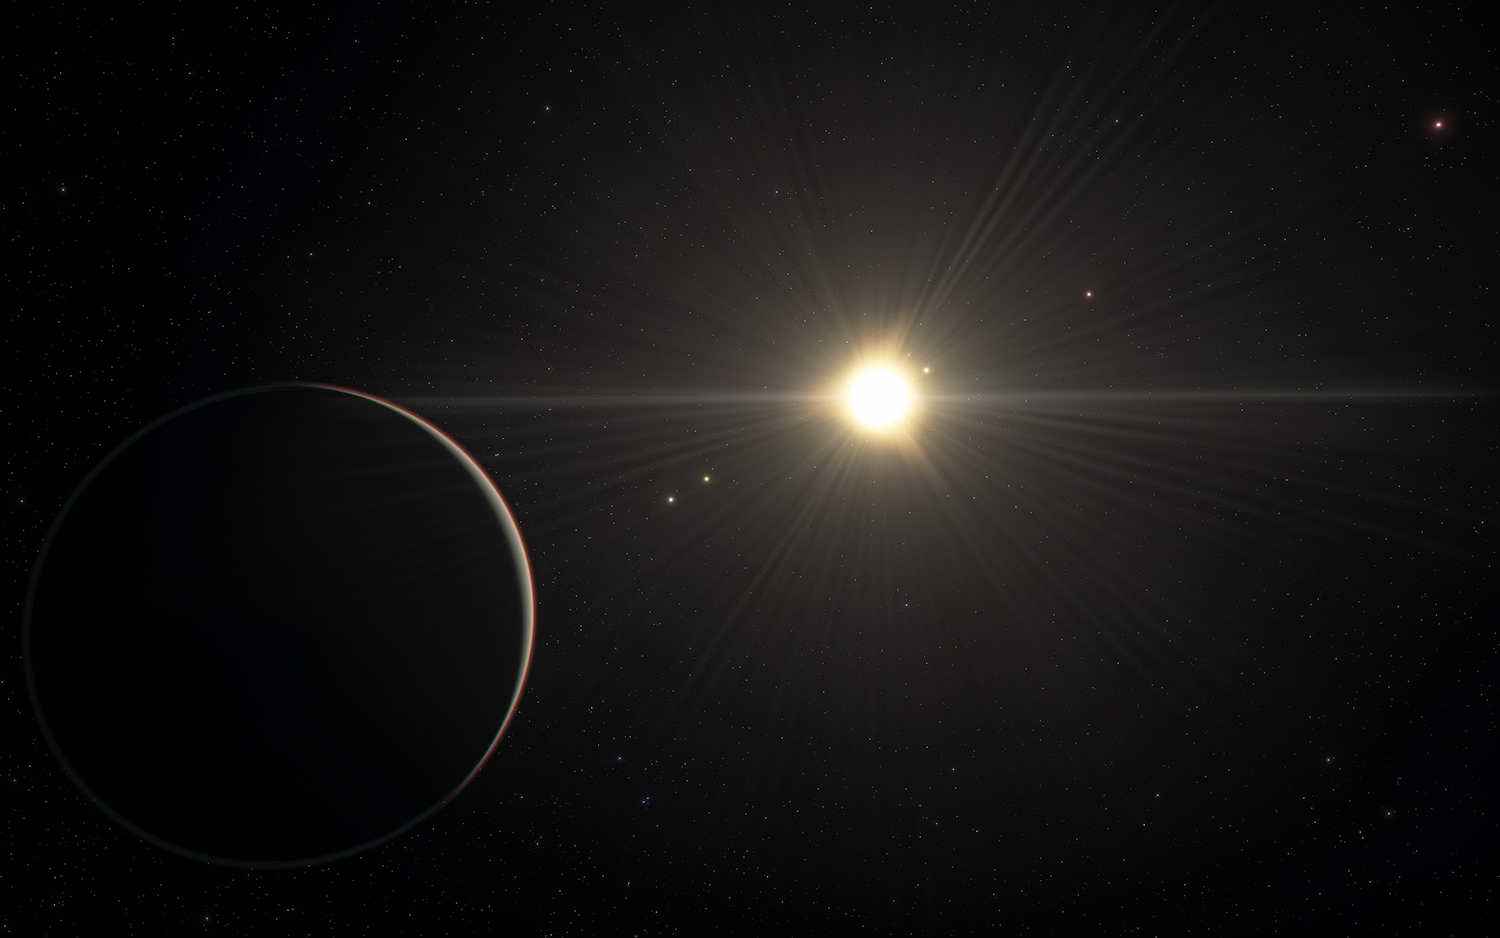 Künstlerische Darstellung des TOI-178-Systems mit dem Planeten im Vordergrund, der am entferntesten um den Stern kreist. Das System weist sechs Exoplaneten auf, die sich alle bis auf den, der dem Stern am nächsten ist, in Resonanz befinden. © ESO/L. Calçada/spaceengine.org